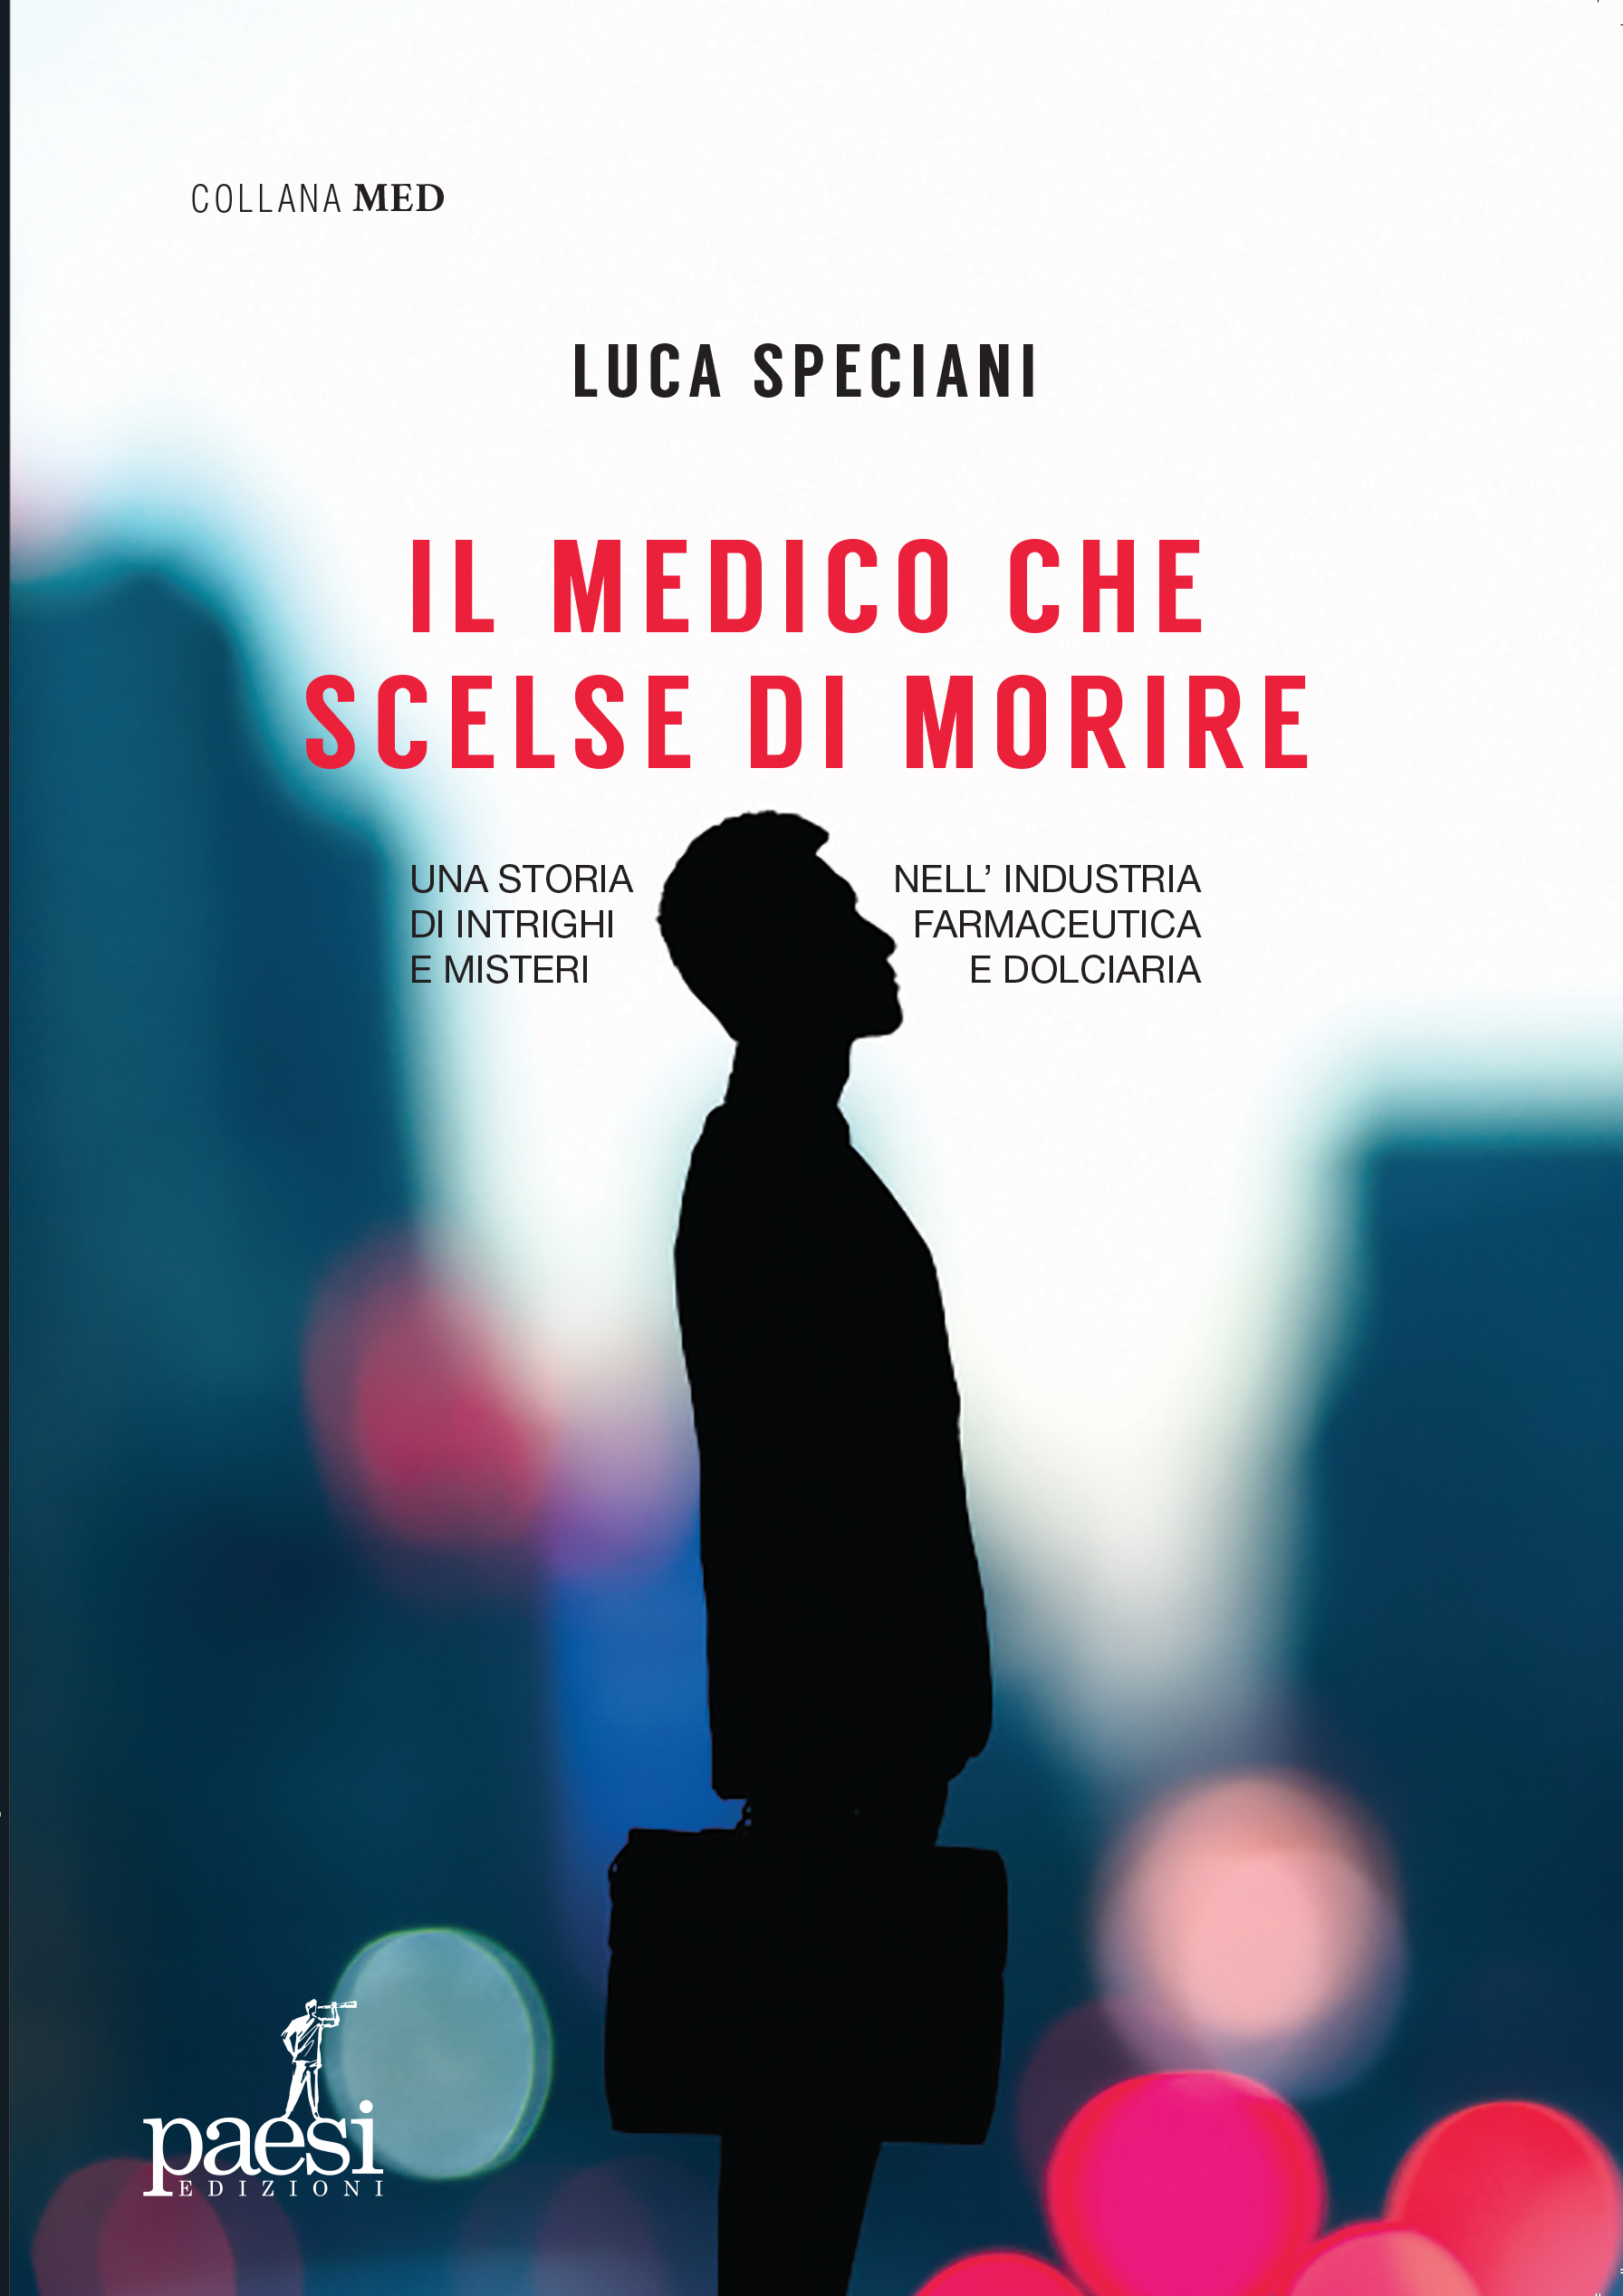 ‘Il medico che scelse di morire’: la presentazione del libro a Milano l’11 giugno